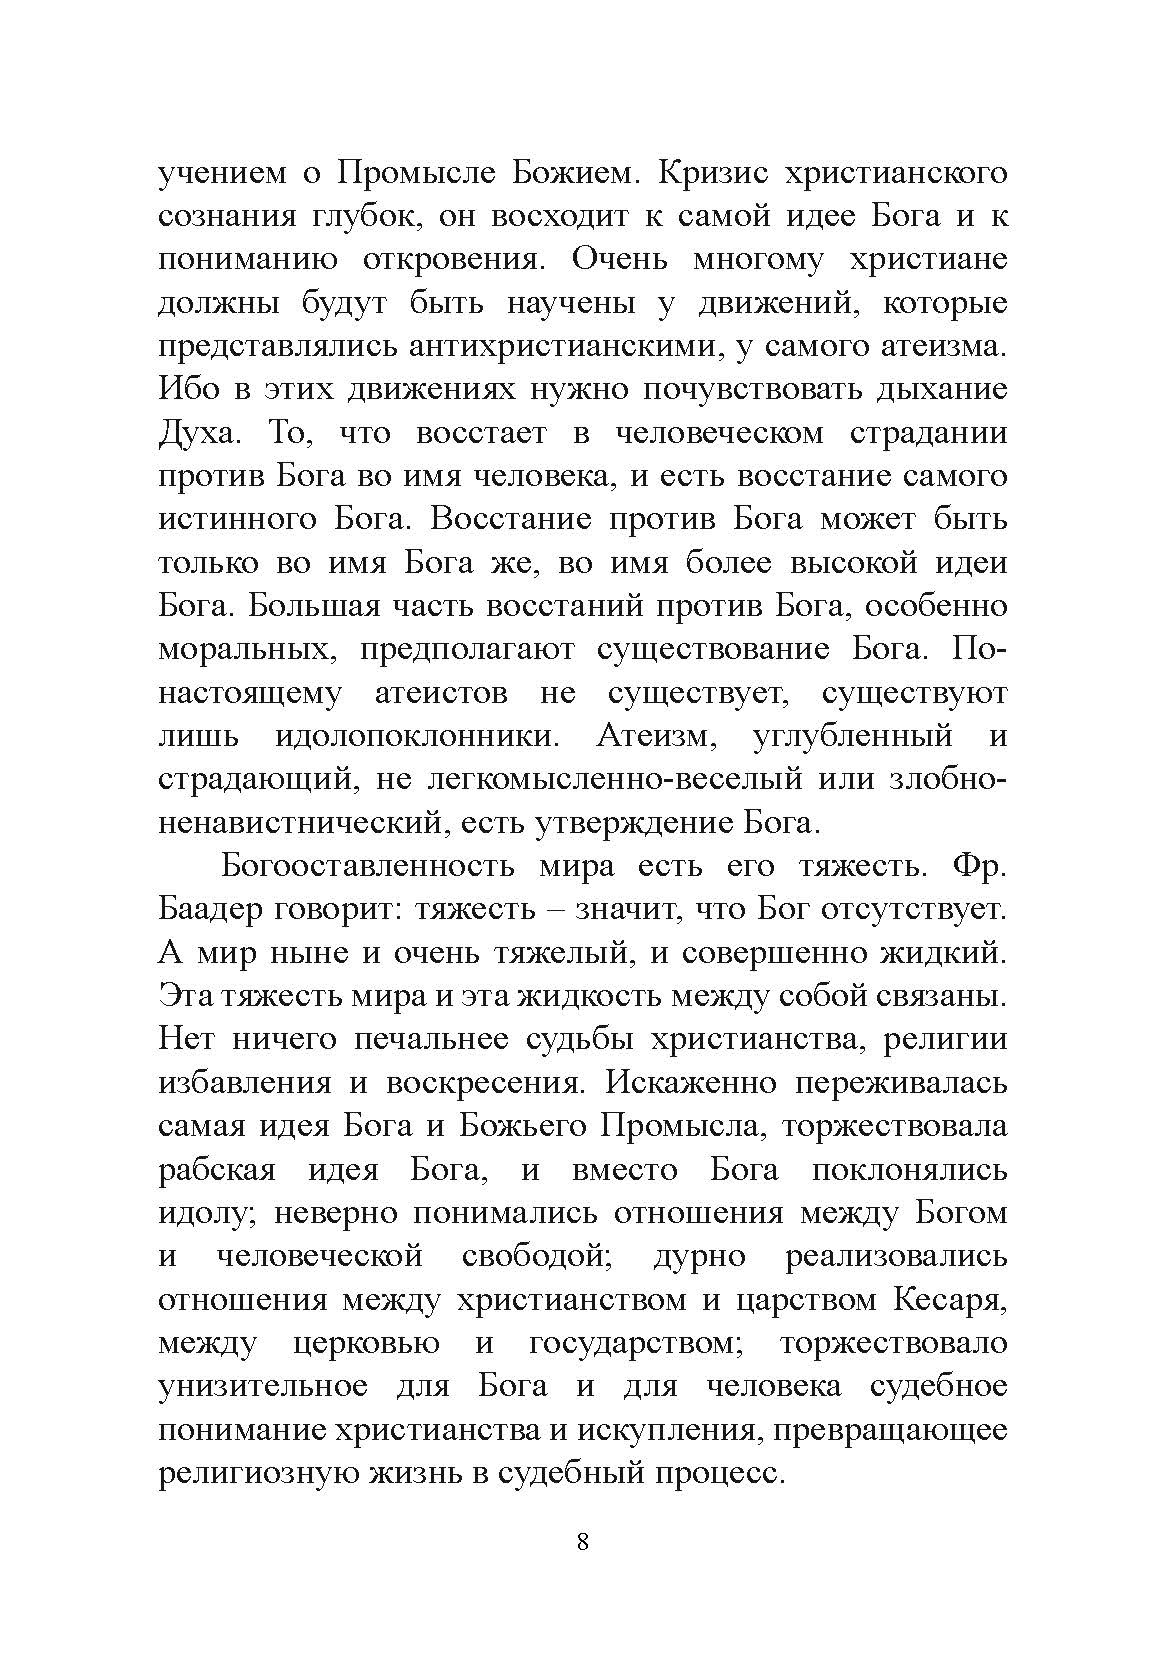 Экзистенциальная диалектика божественного и человеческого. Николай Бердяев. Автор — Николай Бердяев. 